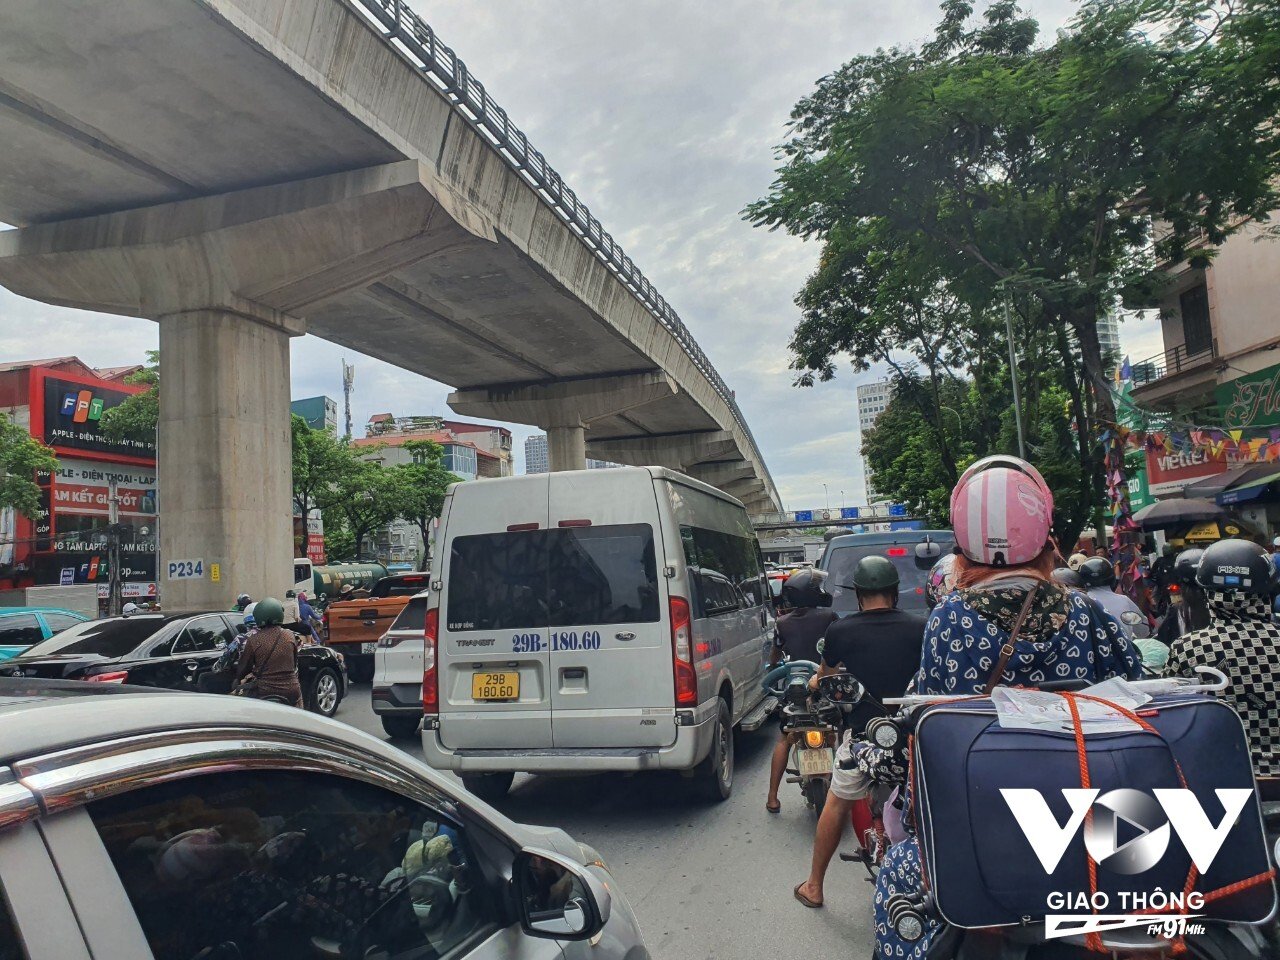 Giao thông trên đường Phạm Văn Đồng gặp khó do ảnh hưởng vụ va chạm.